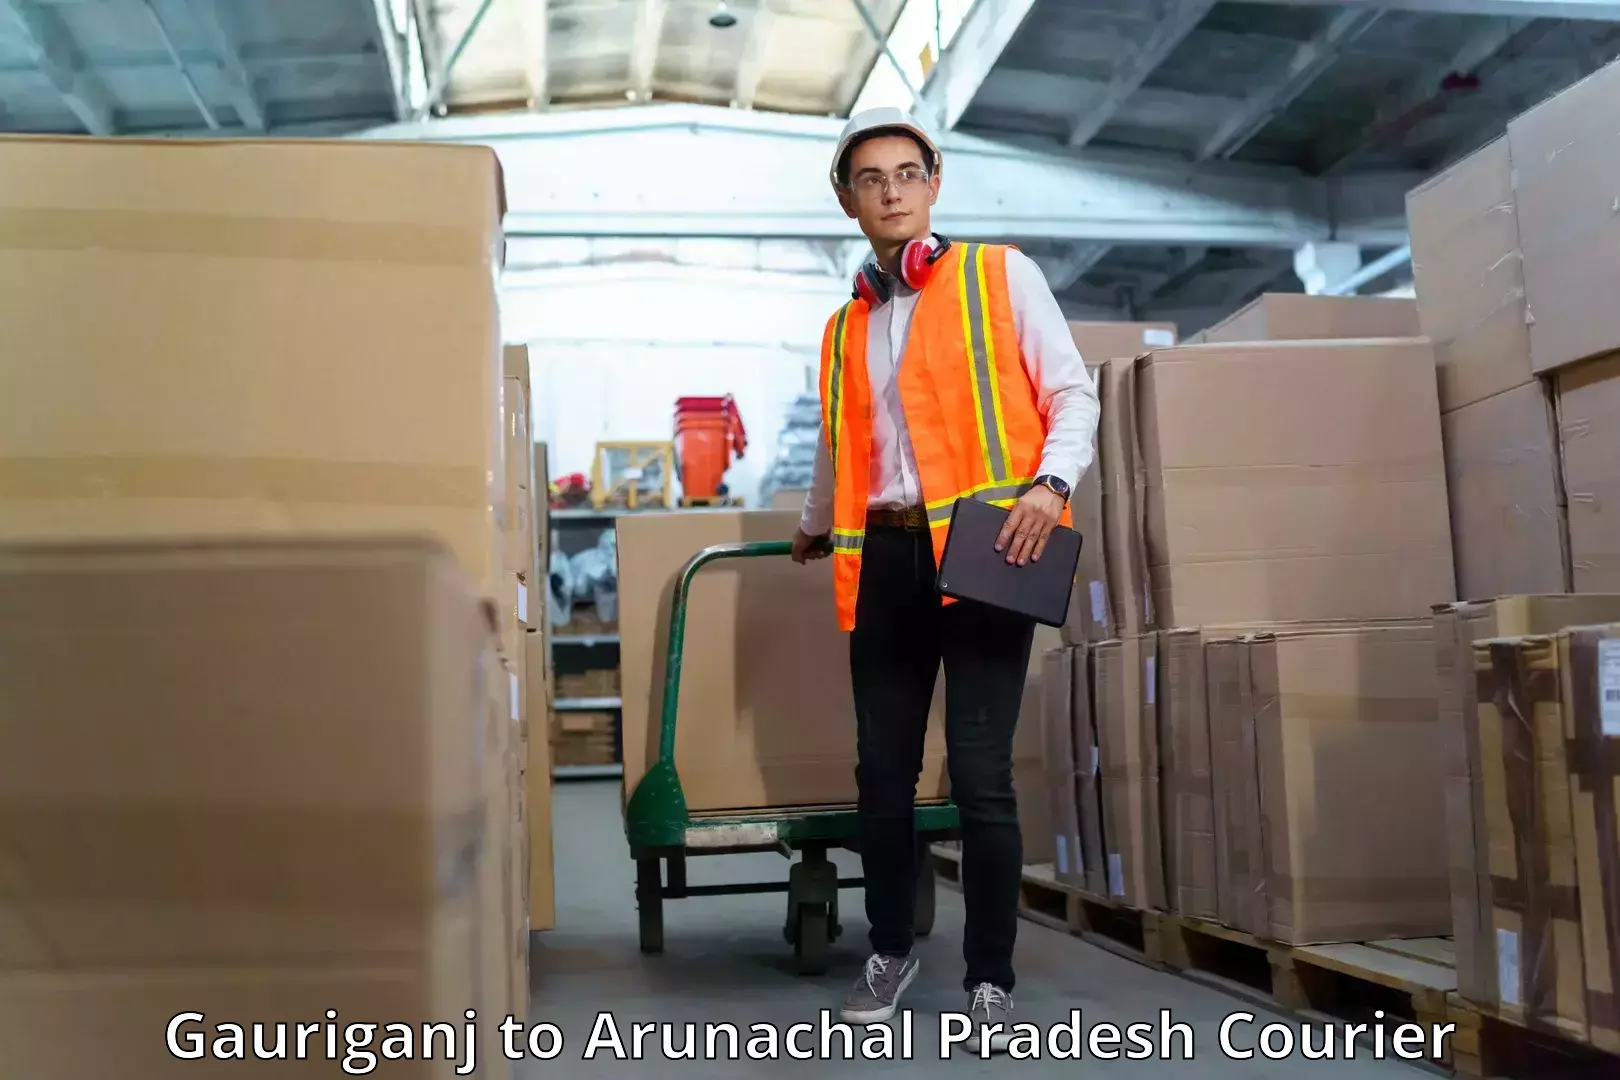 Premium courier solutions Gauriganj to Arunachal Pradesh